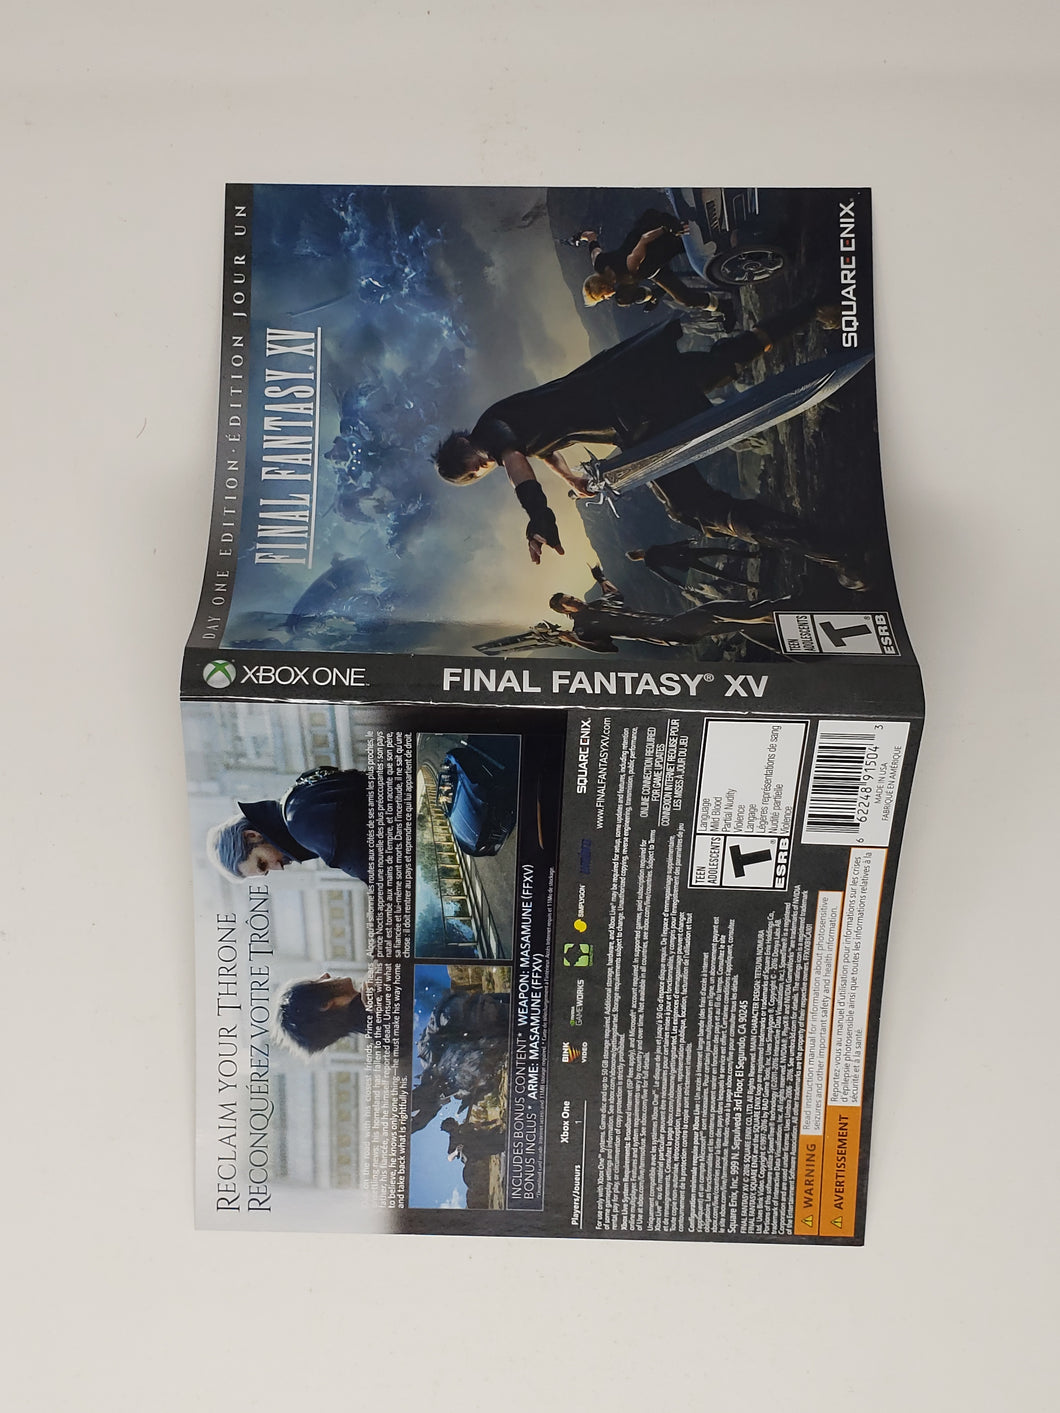 Final Fantasy XV Day One Edition [Cover art] - Microsoft XBOXONE